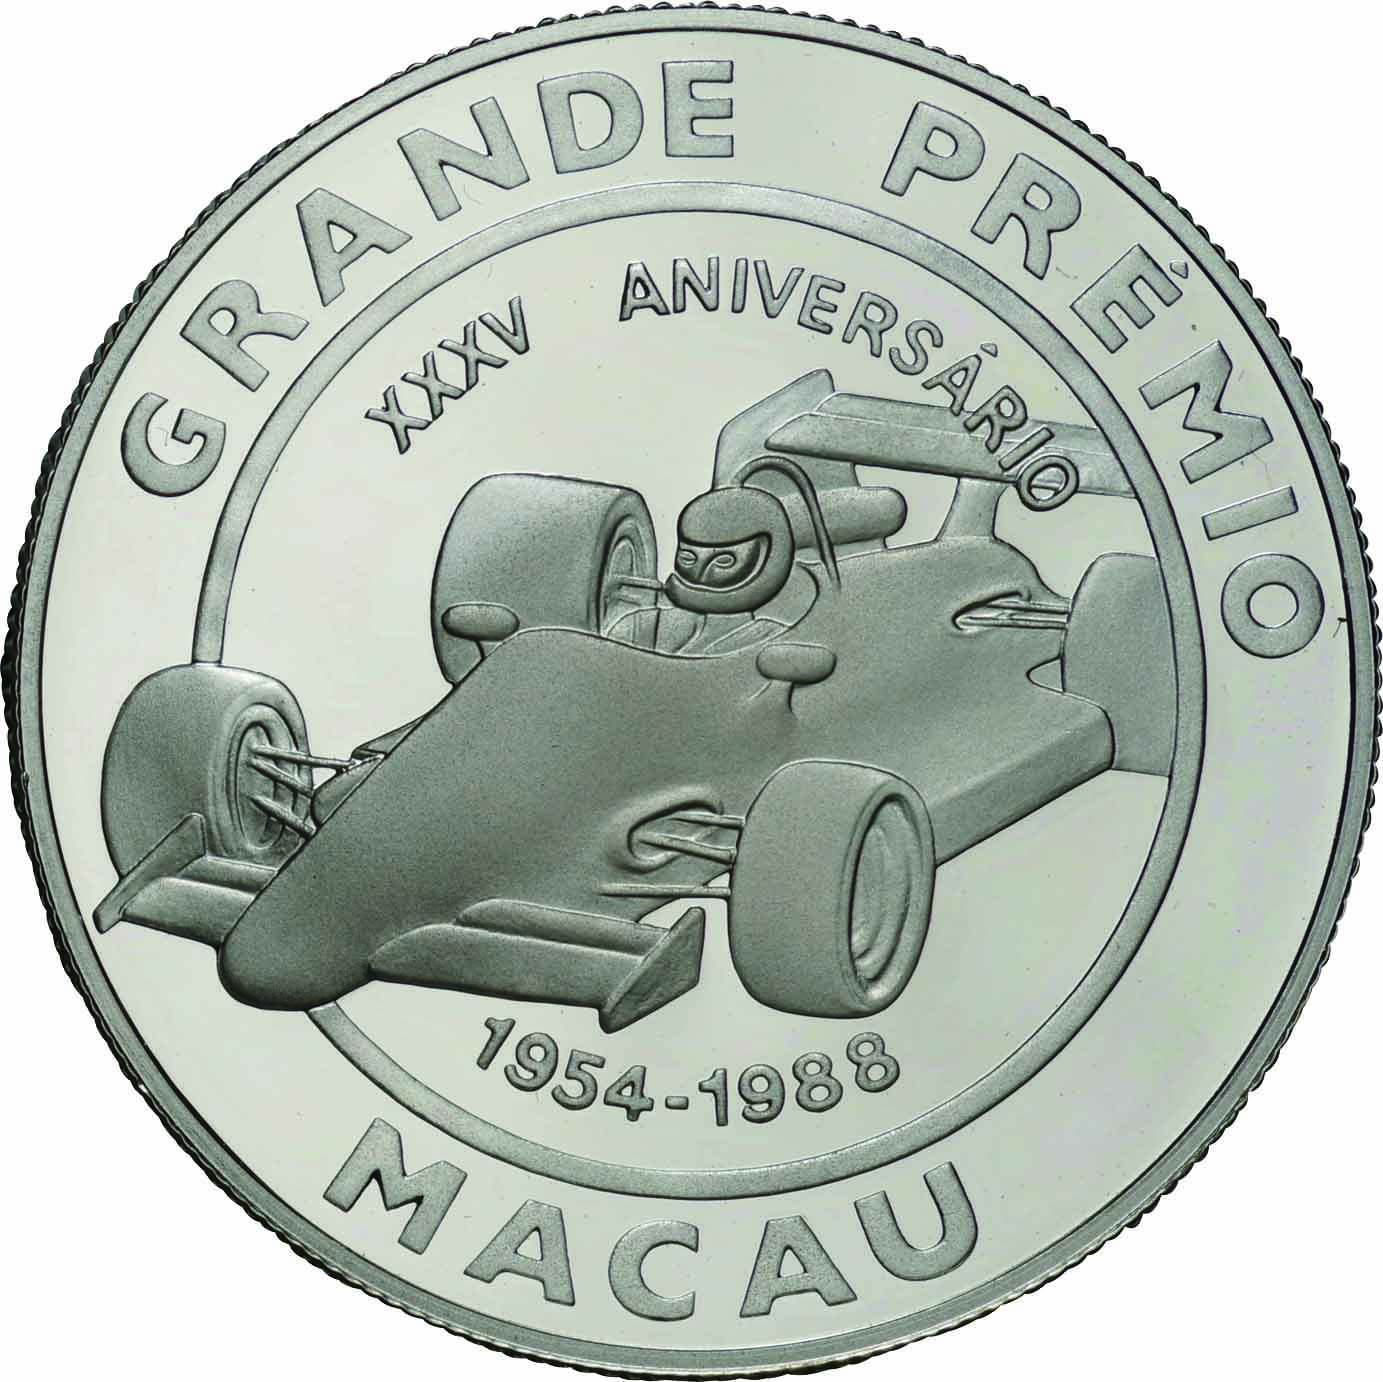 マカオ-Macau. 1988. Silver. 100ﾊﾟﾀｶ(Pataca). プルーフ. Proof